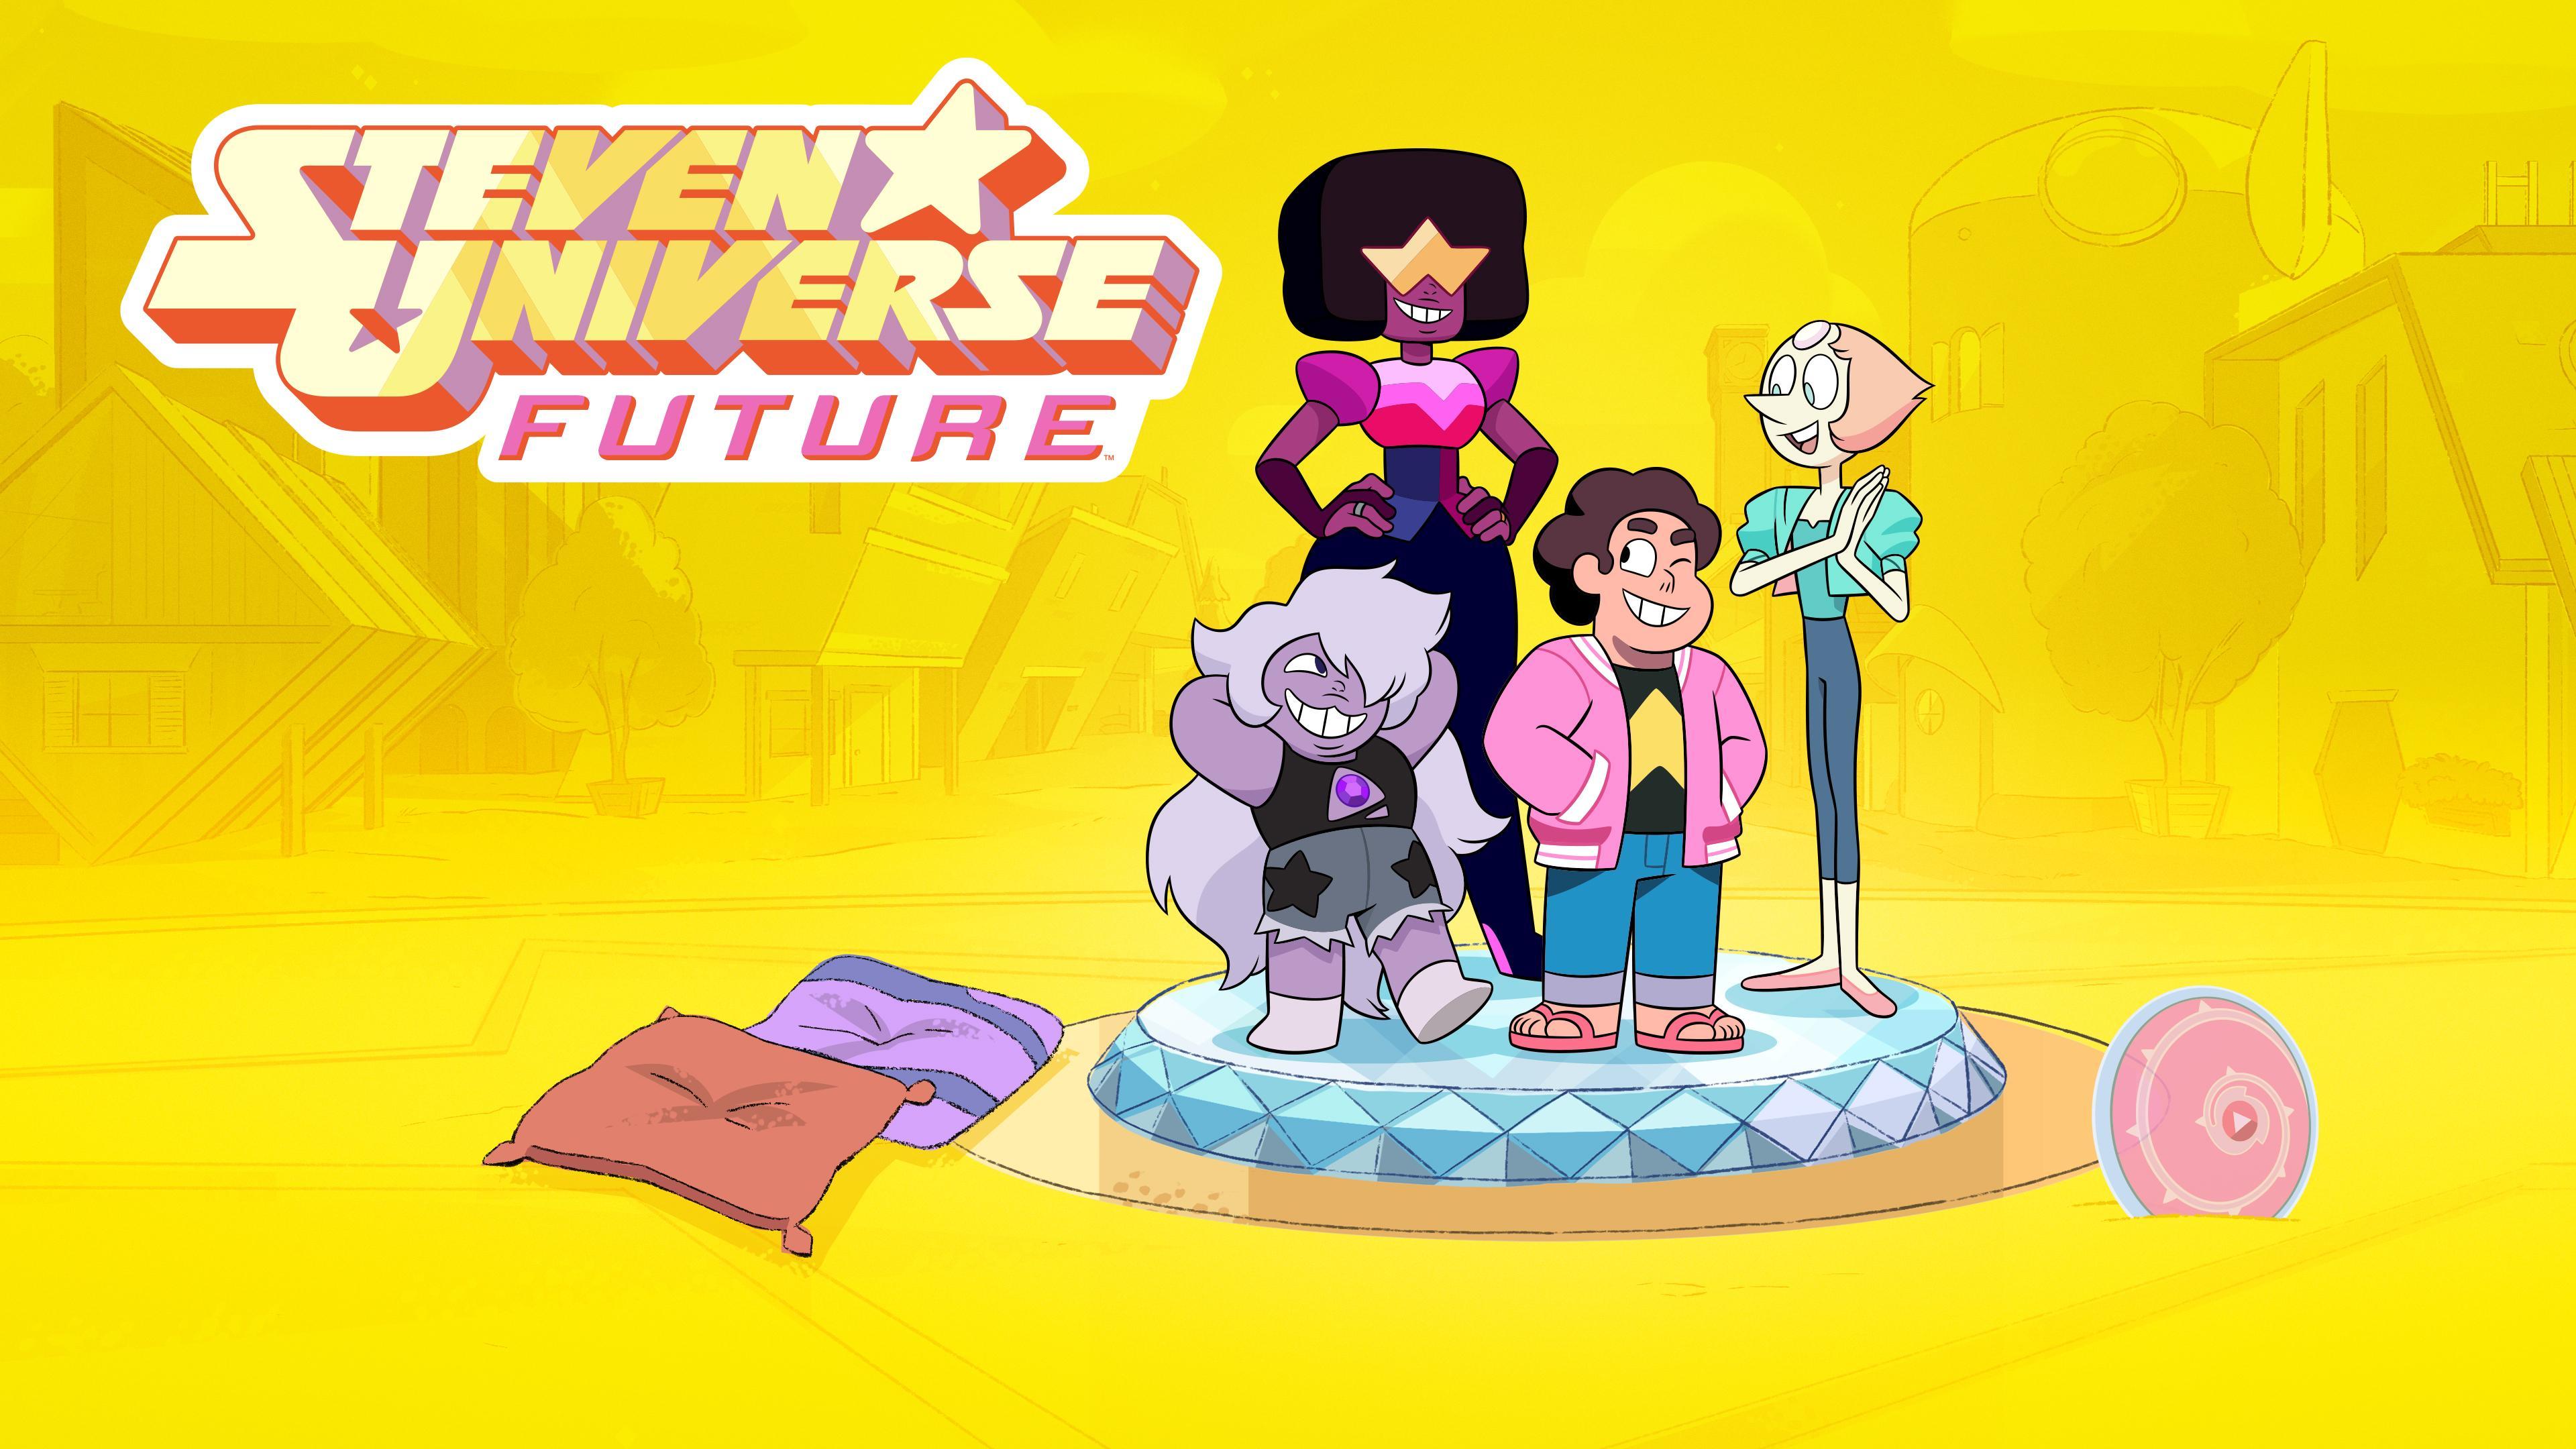 TV Time - Steven Universe (TVShow Time)